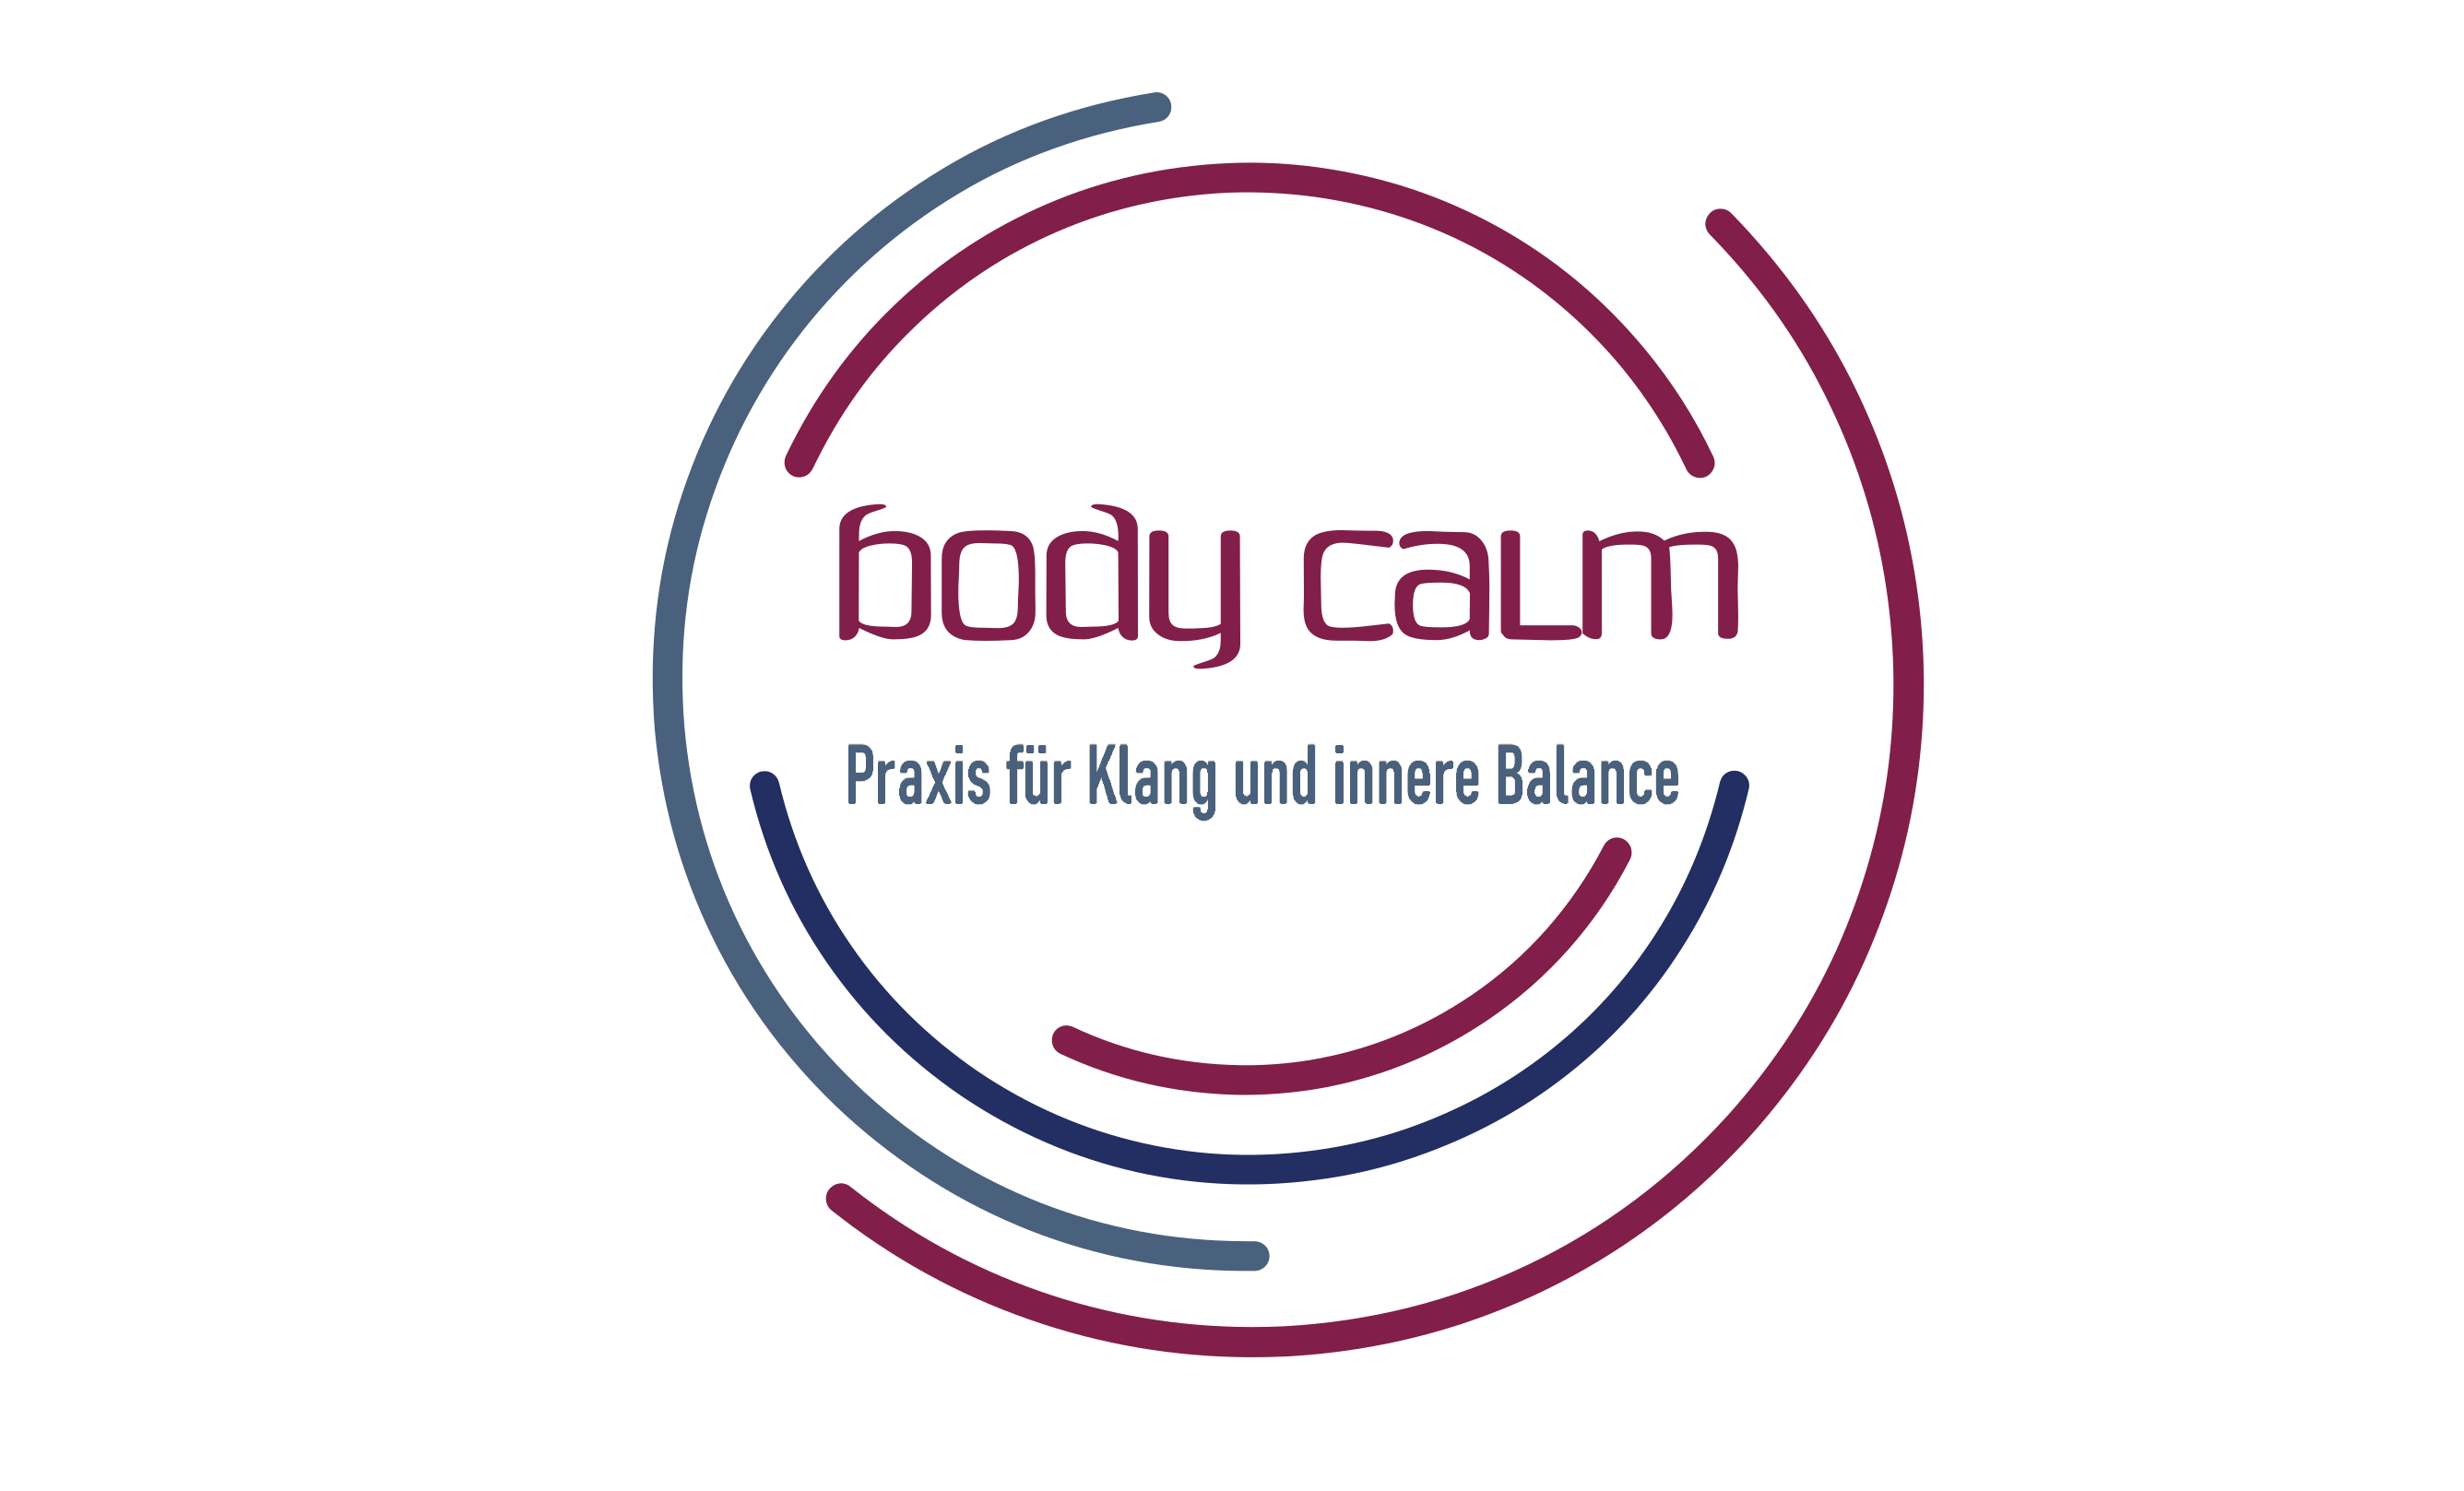 bodycalm, Praxis für Klang und innere Balance